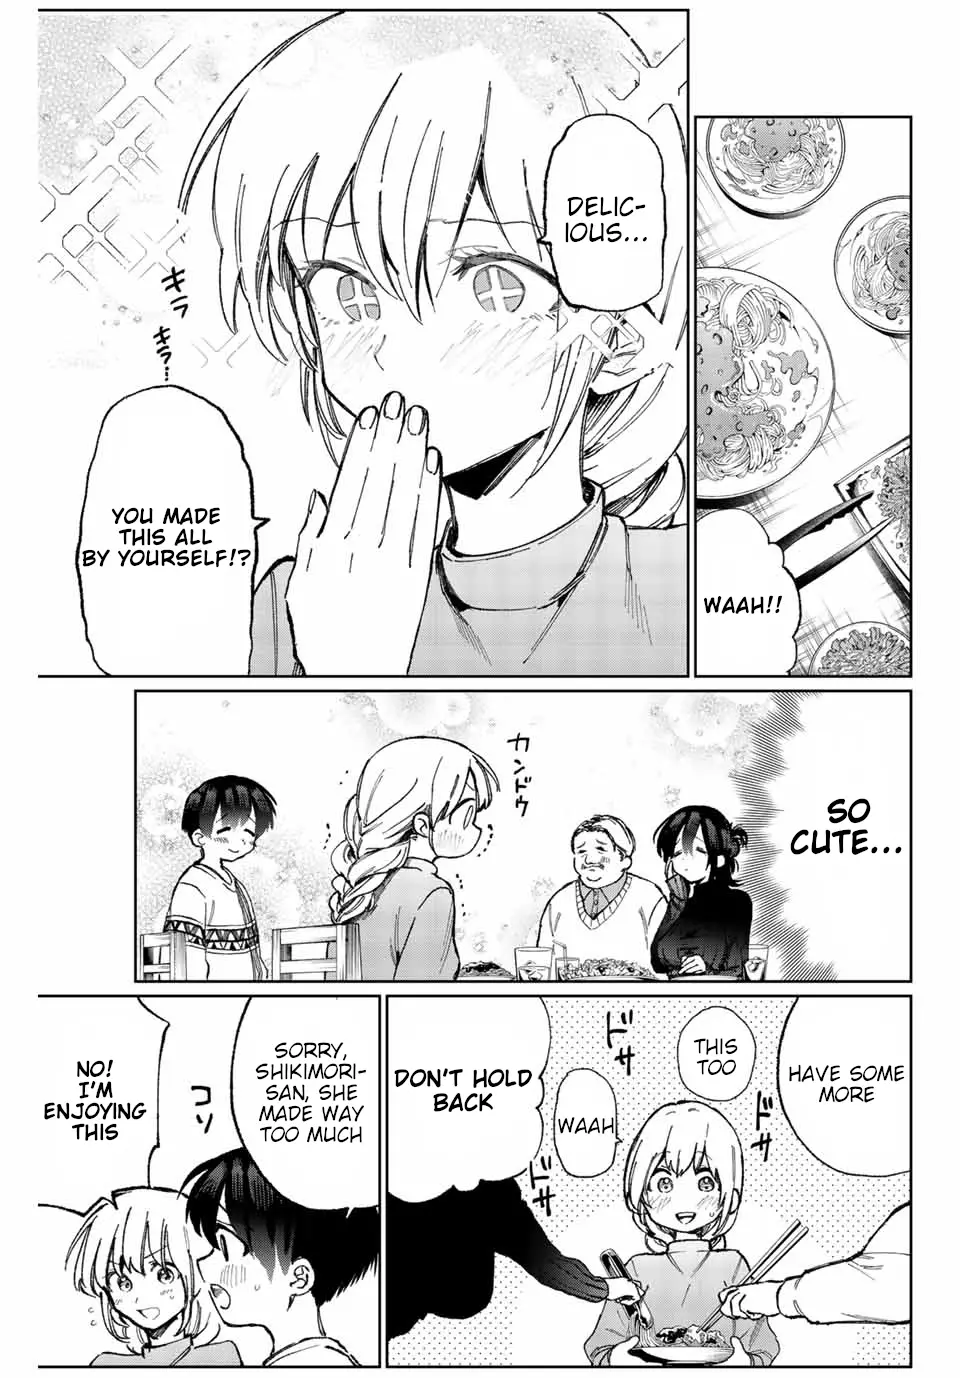 Shikimori's Not Just A Cutie - 16 page 6